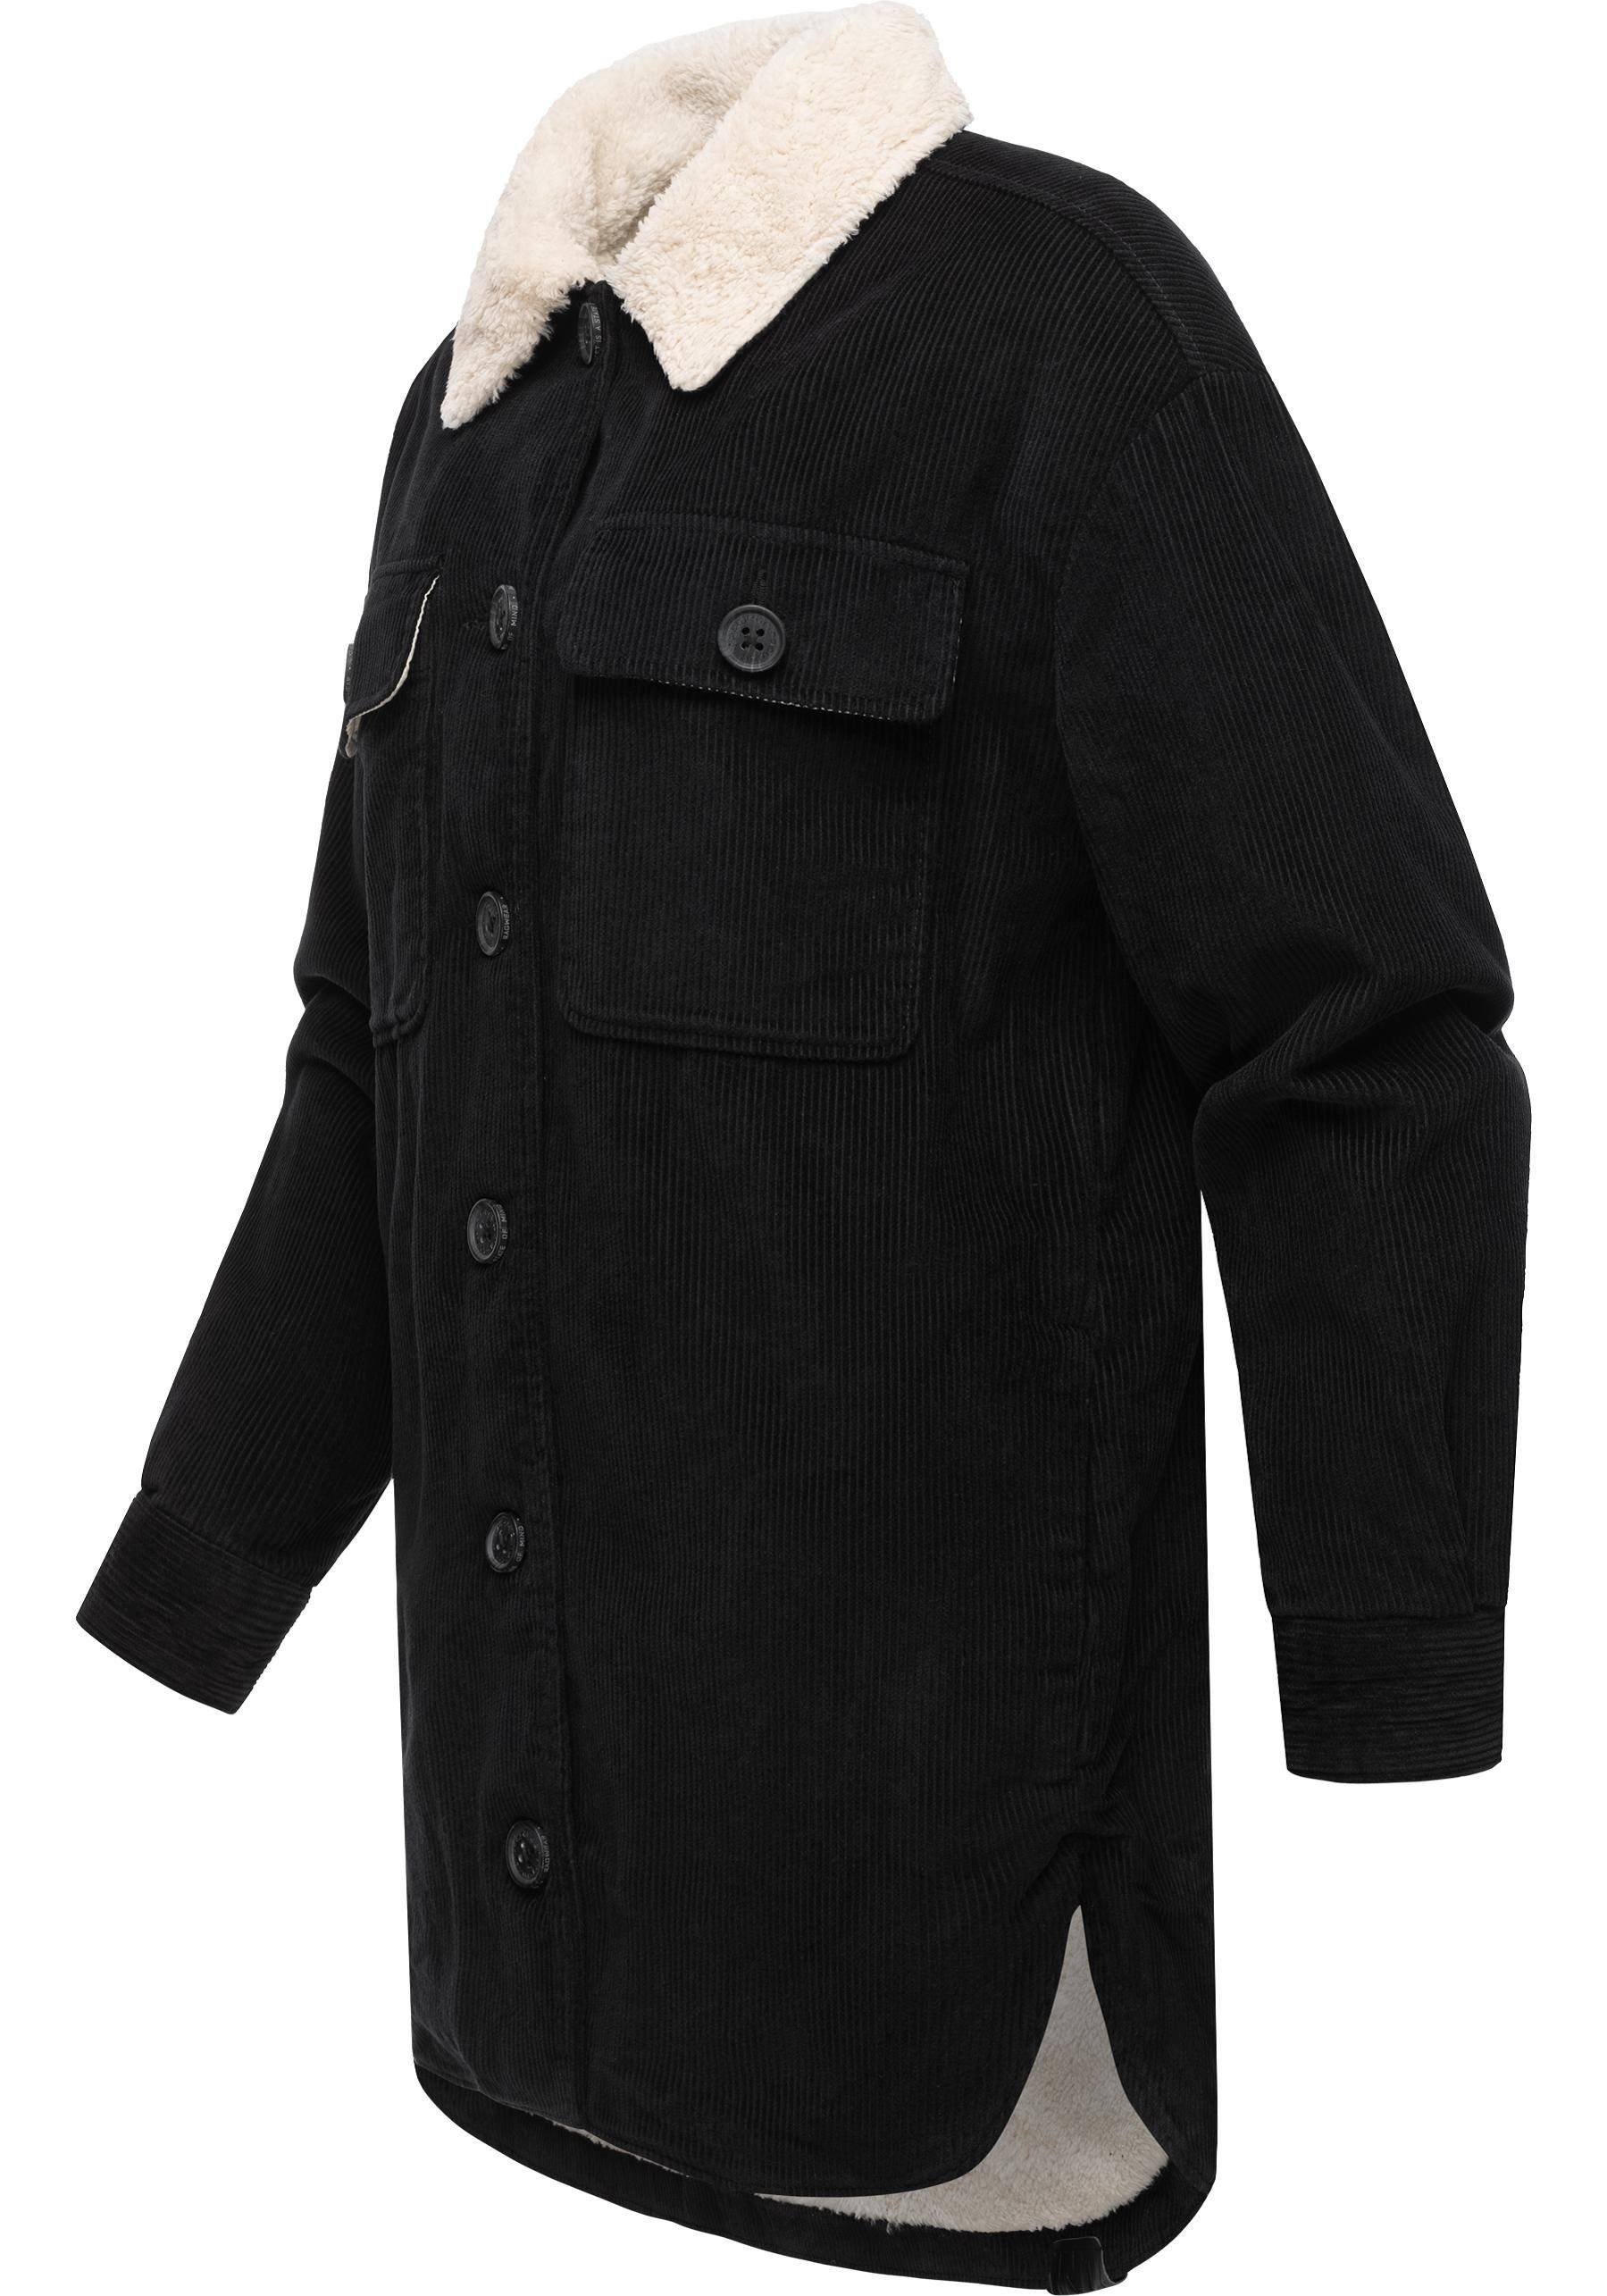 Cord aus mit Damen Cordjacke Kyoka Ragwear Stylische Innenfutter Jacke schwarz flauschigem